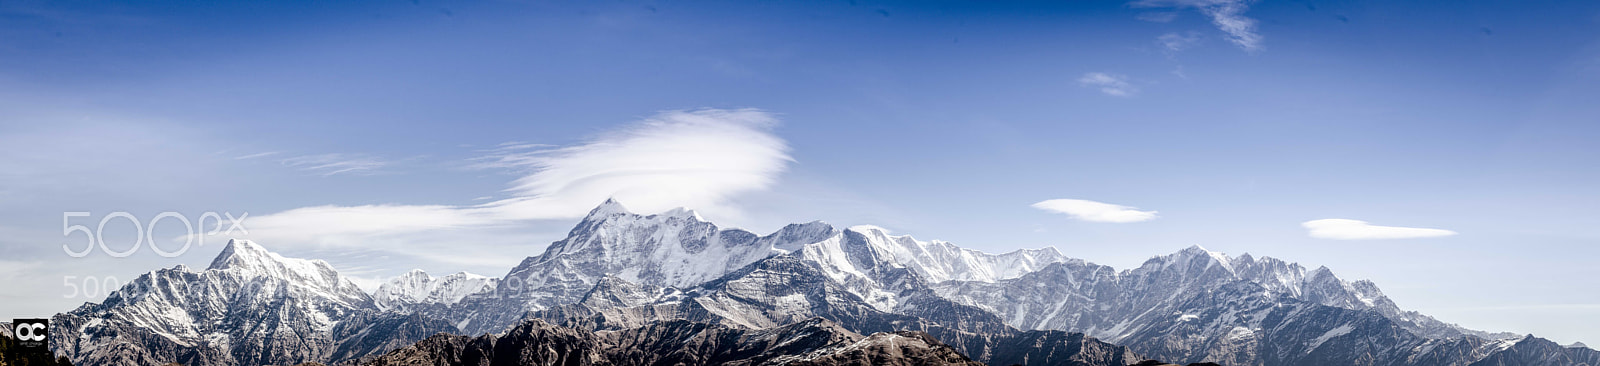 Nikon D5100 sample photo. Himalayan ranges photography